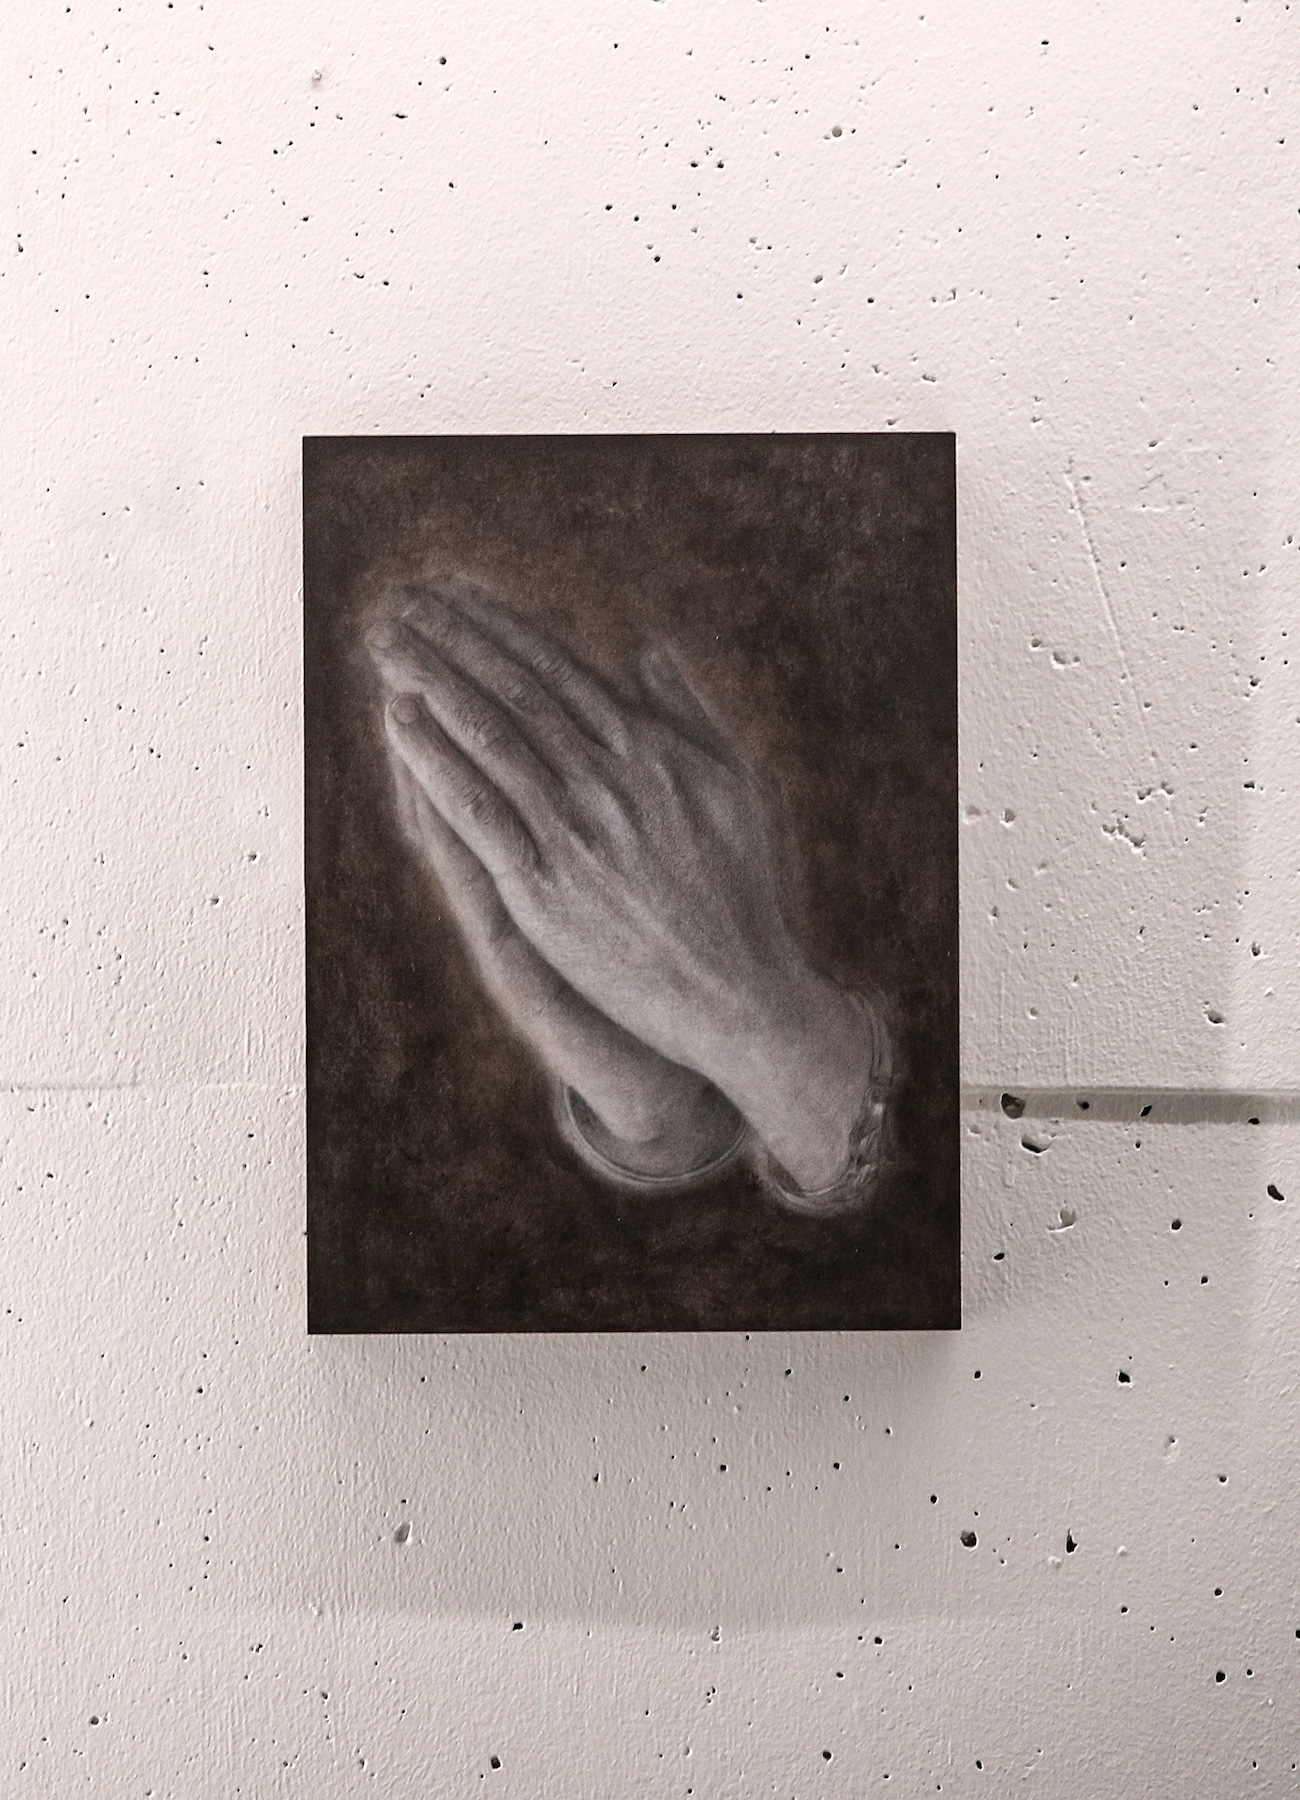 SUZUME UCHIDA "Praying Hands"